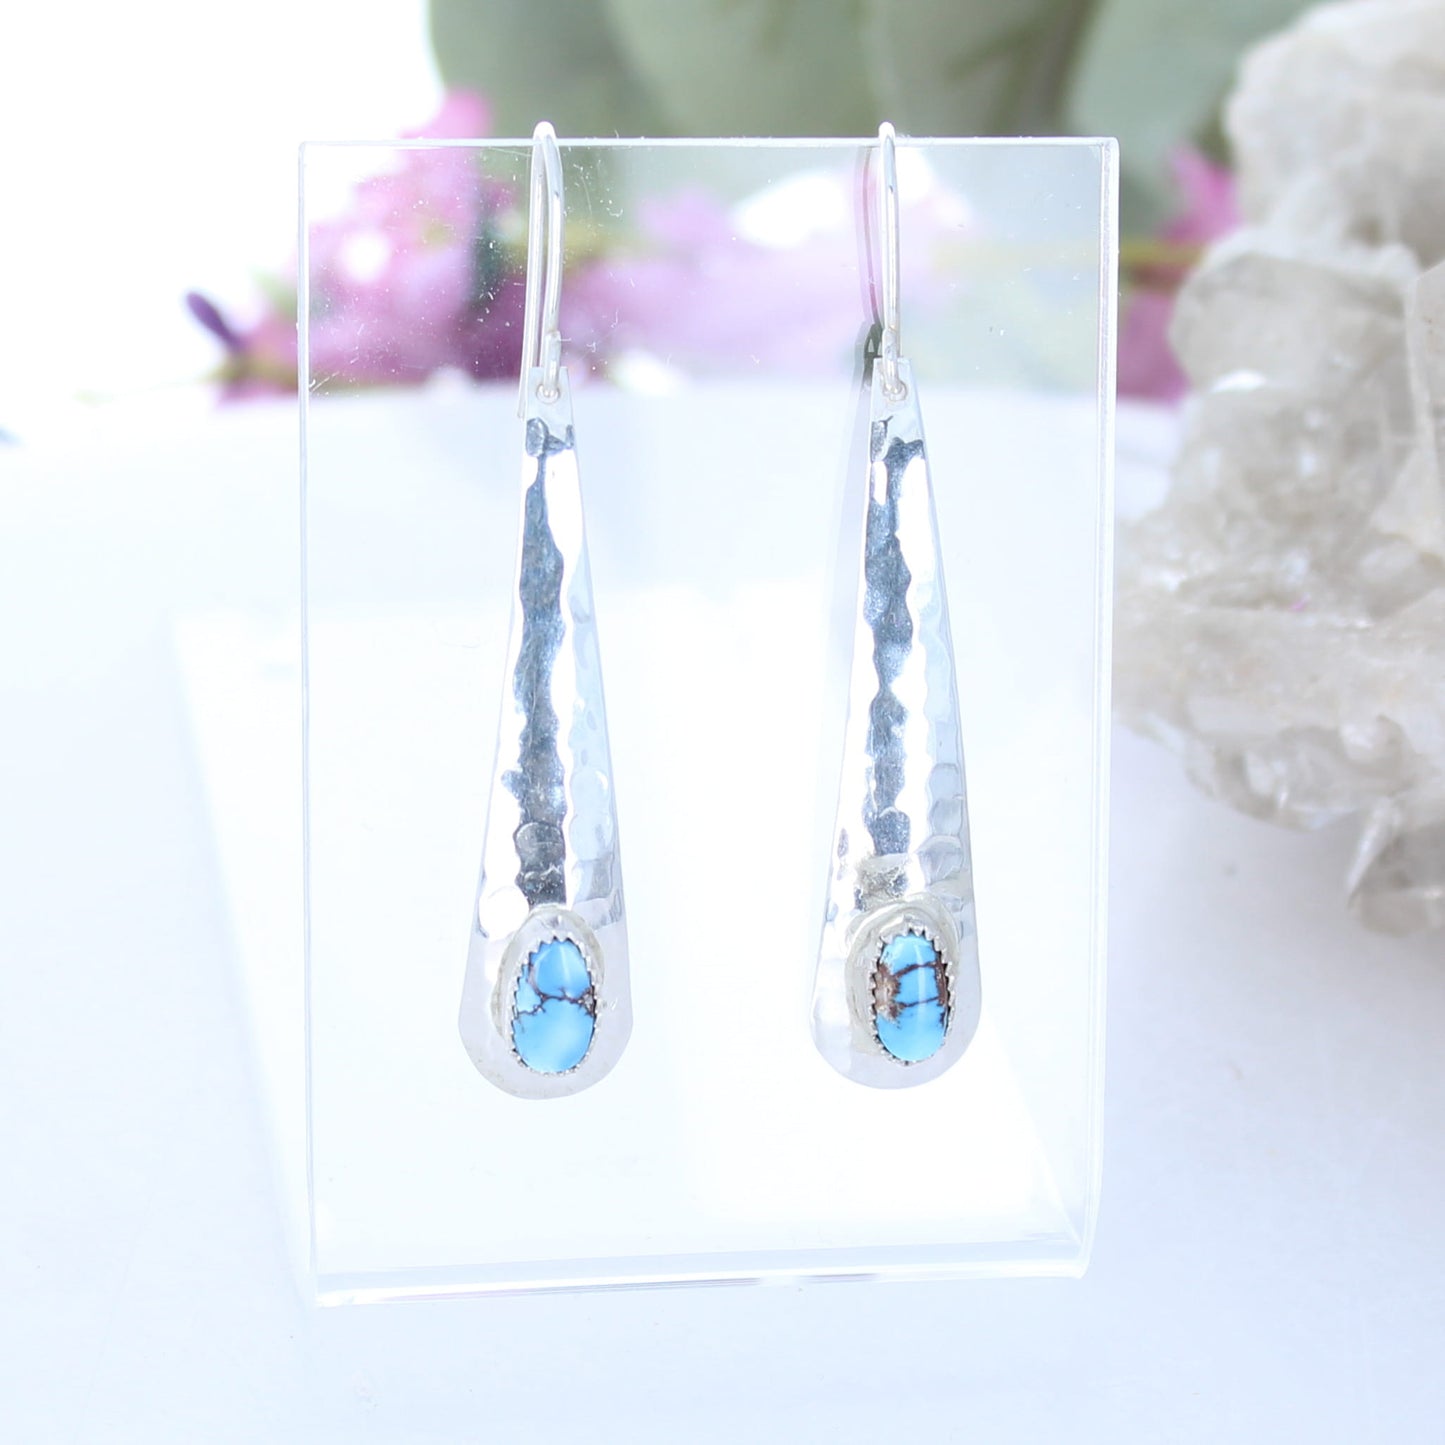 Kazakhstan Turquoise Earrings Sterling Silver Long Teardrops